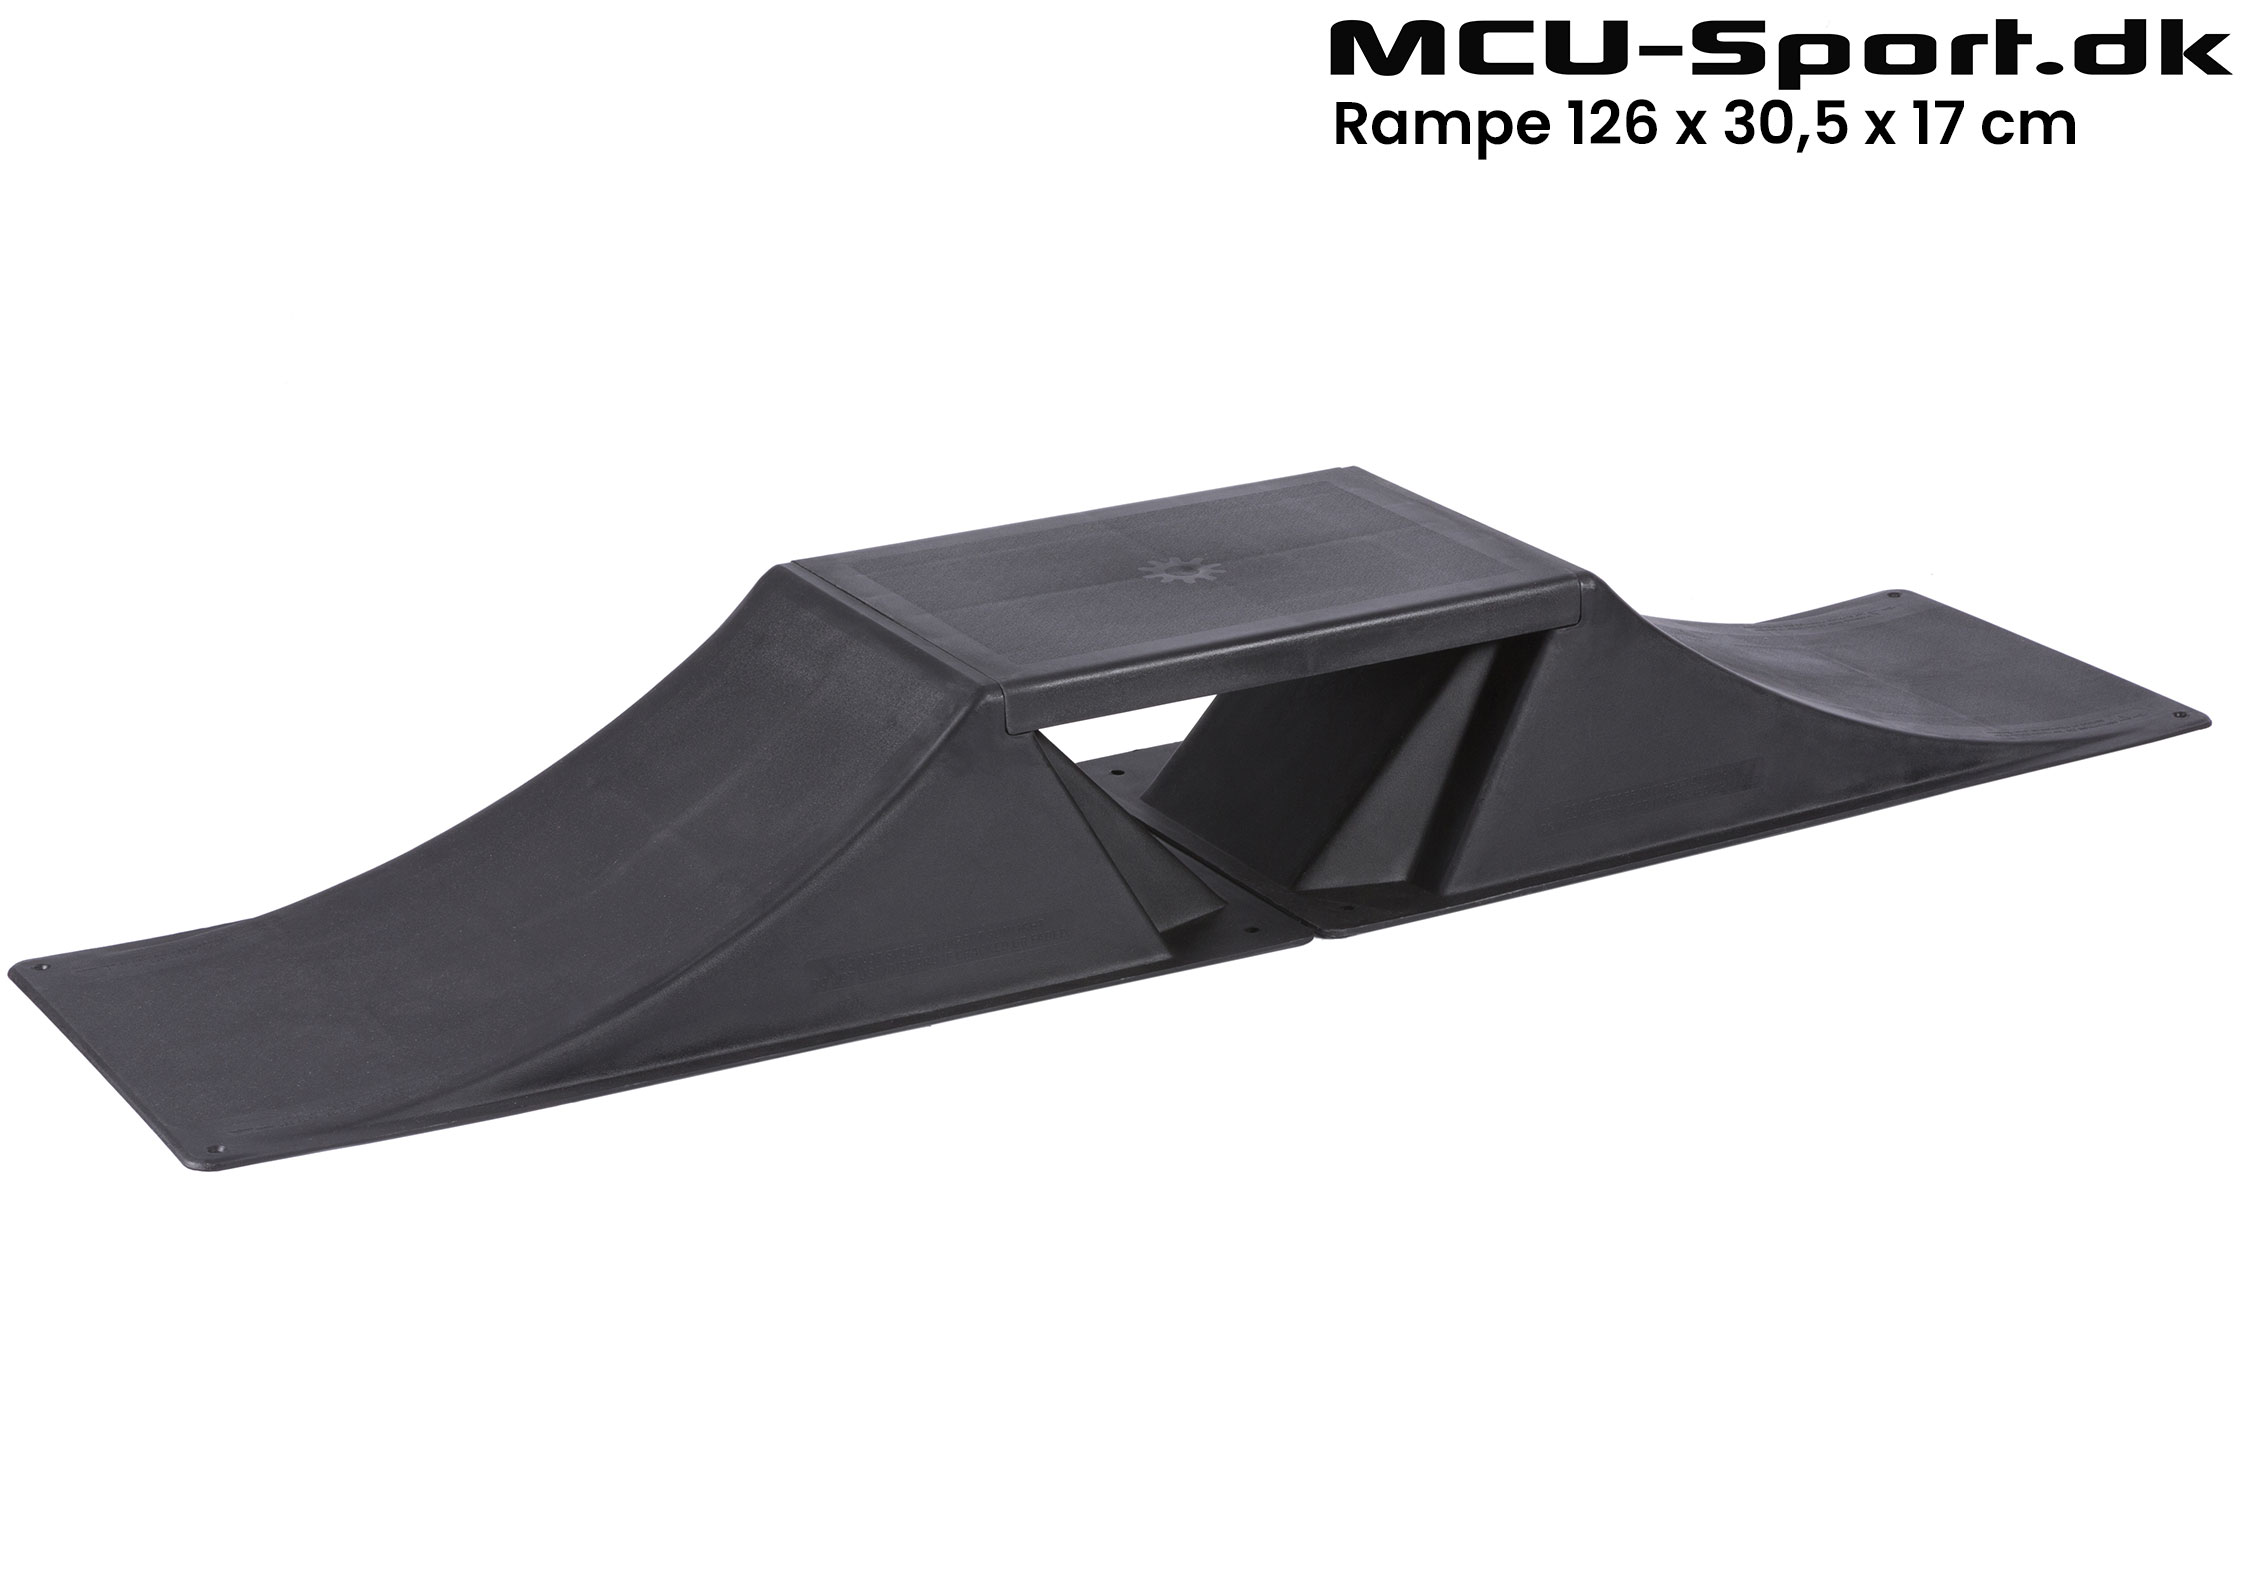 Billede af MCU-Sport Skate Mini Rampe 126 x 30,5 x 17 cm